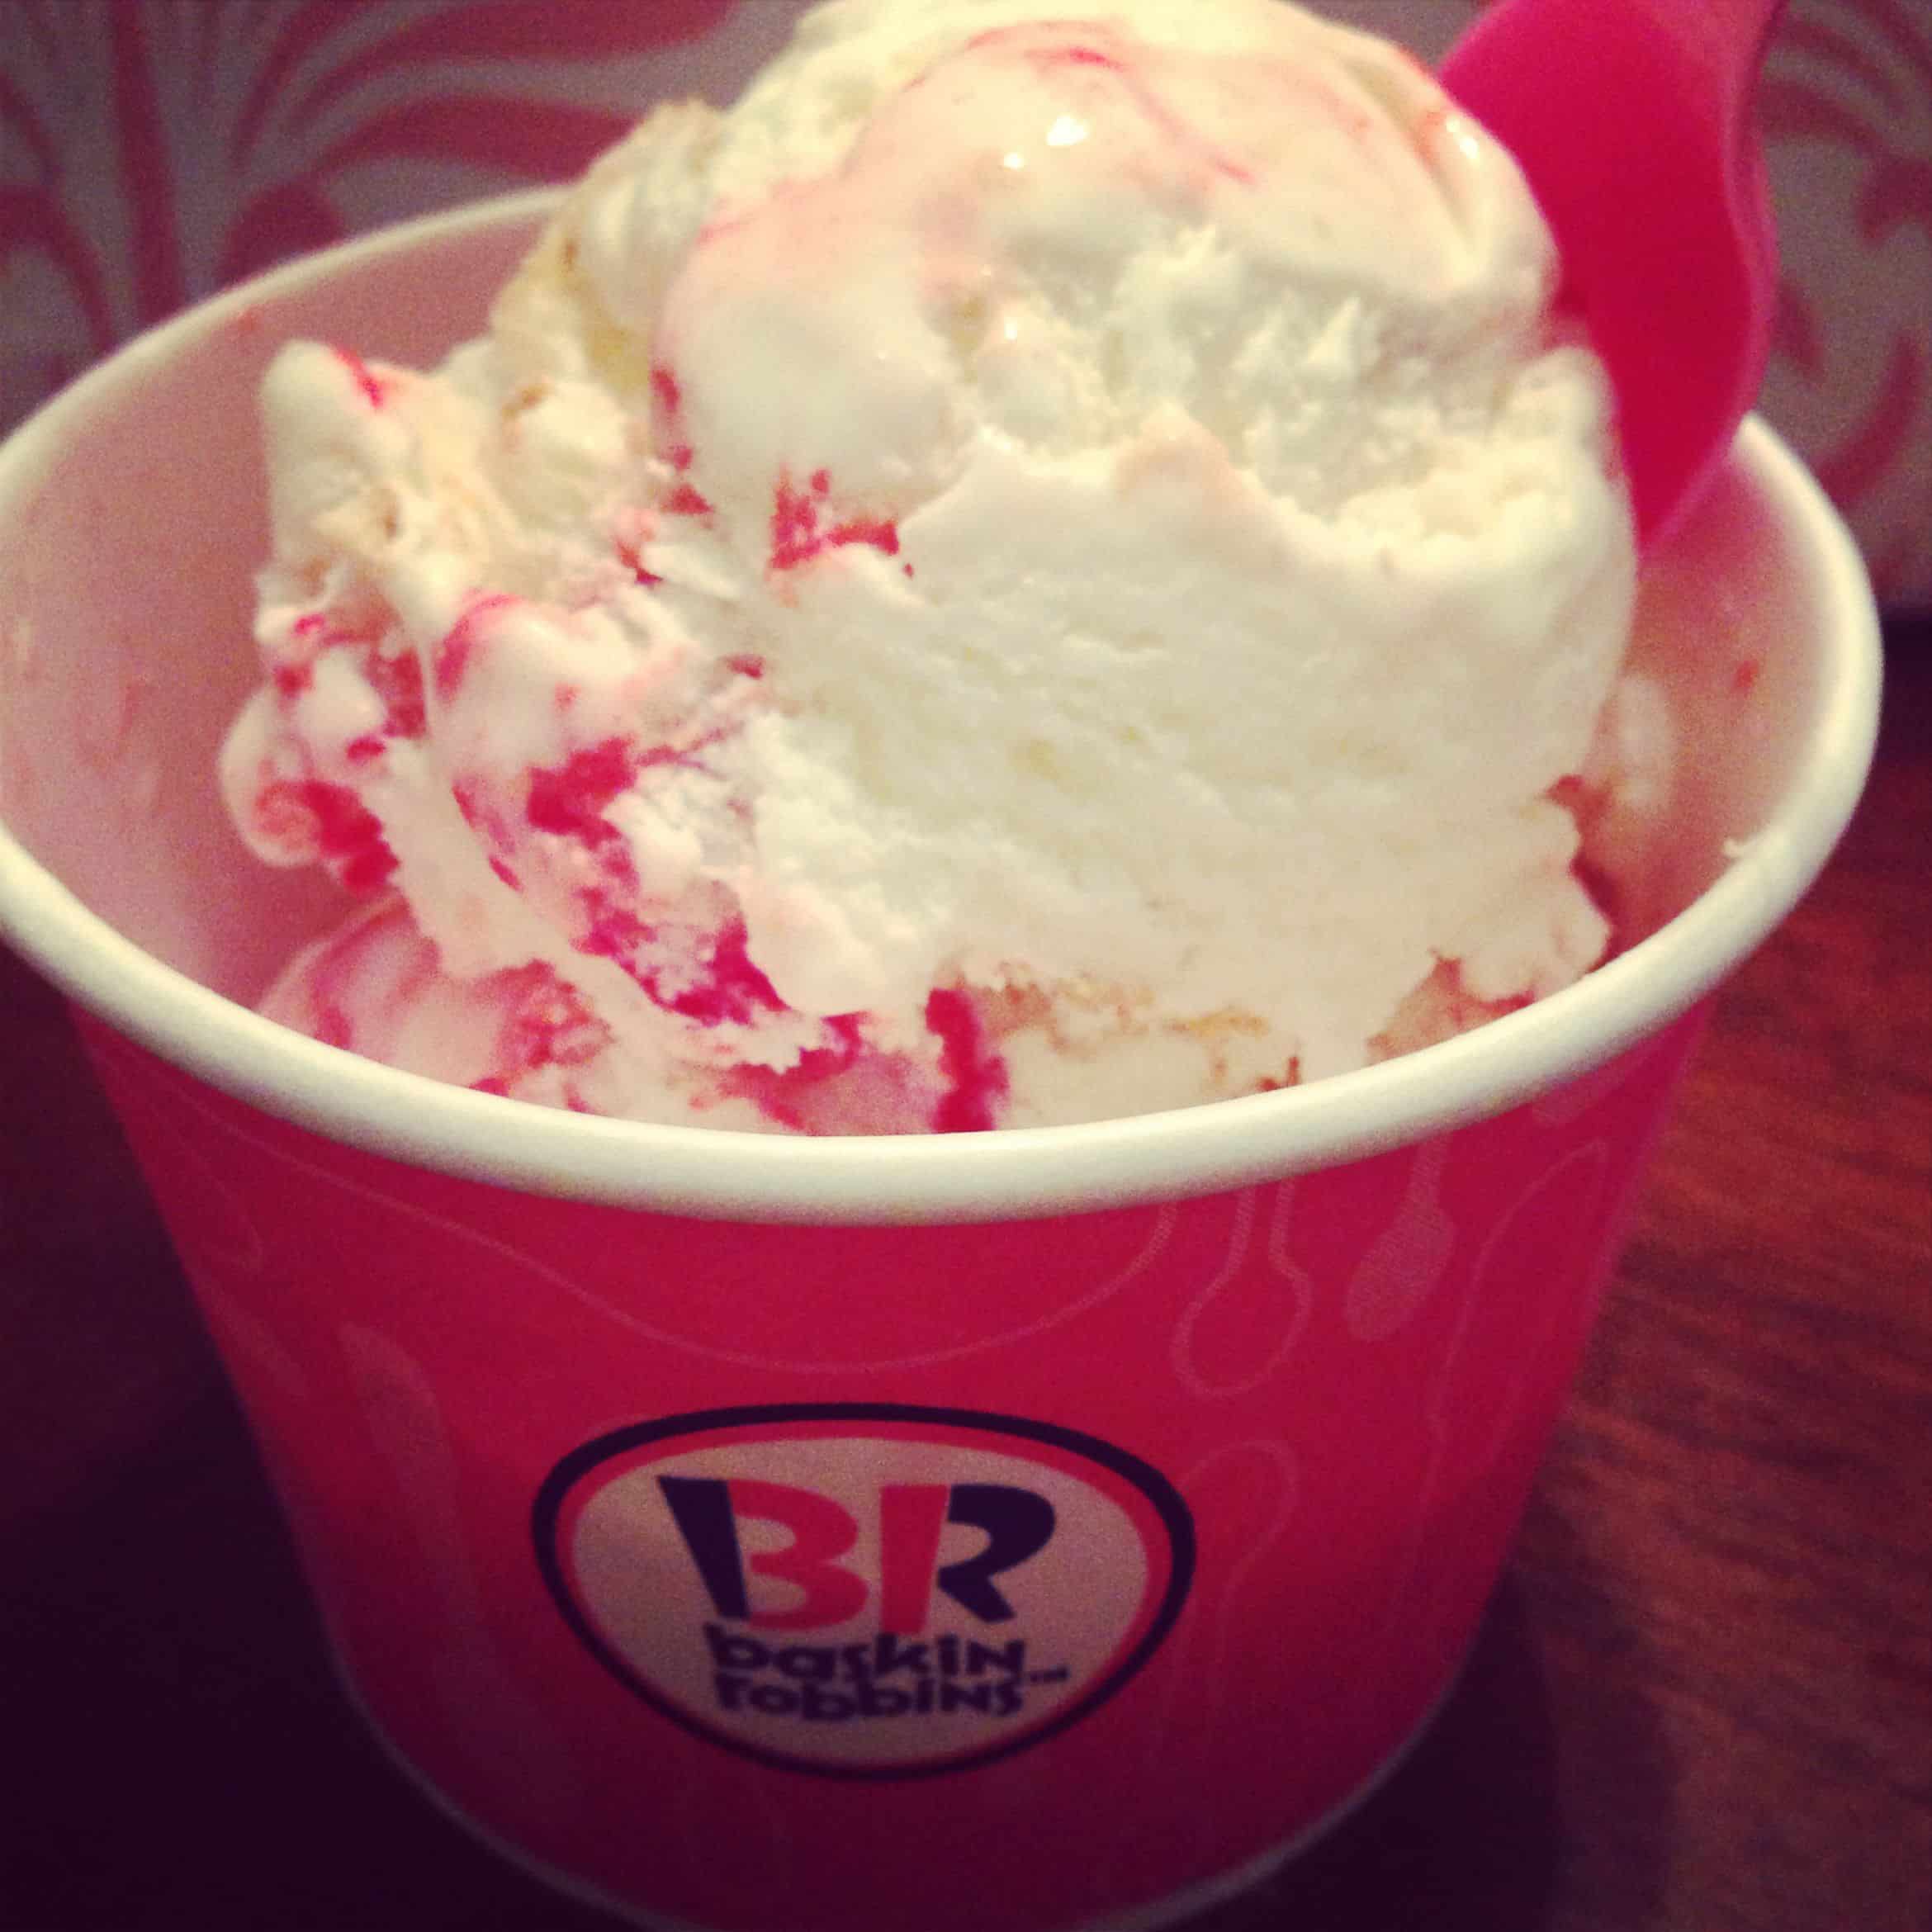 Baskin Robbins strawberry cheesecake ice cream !